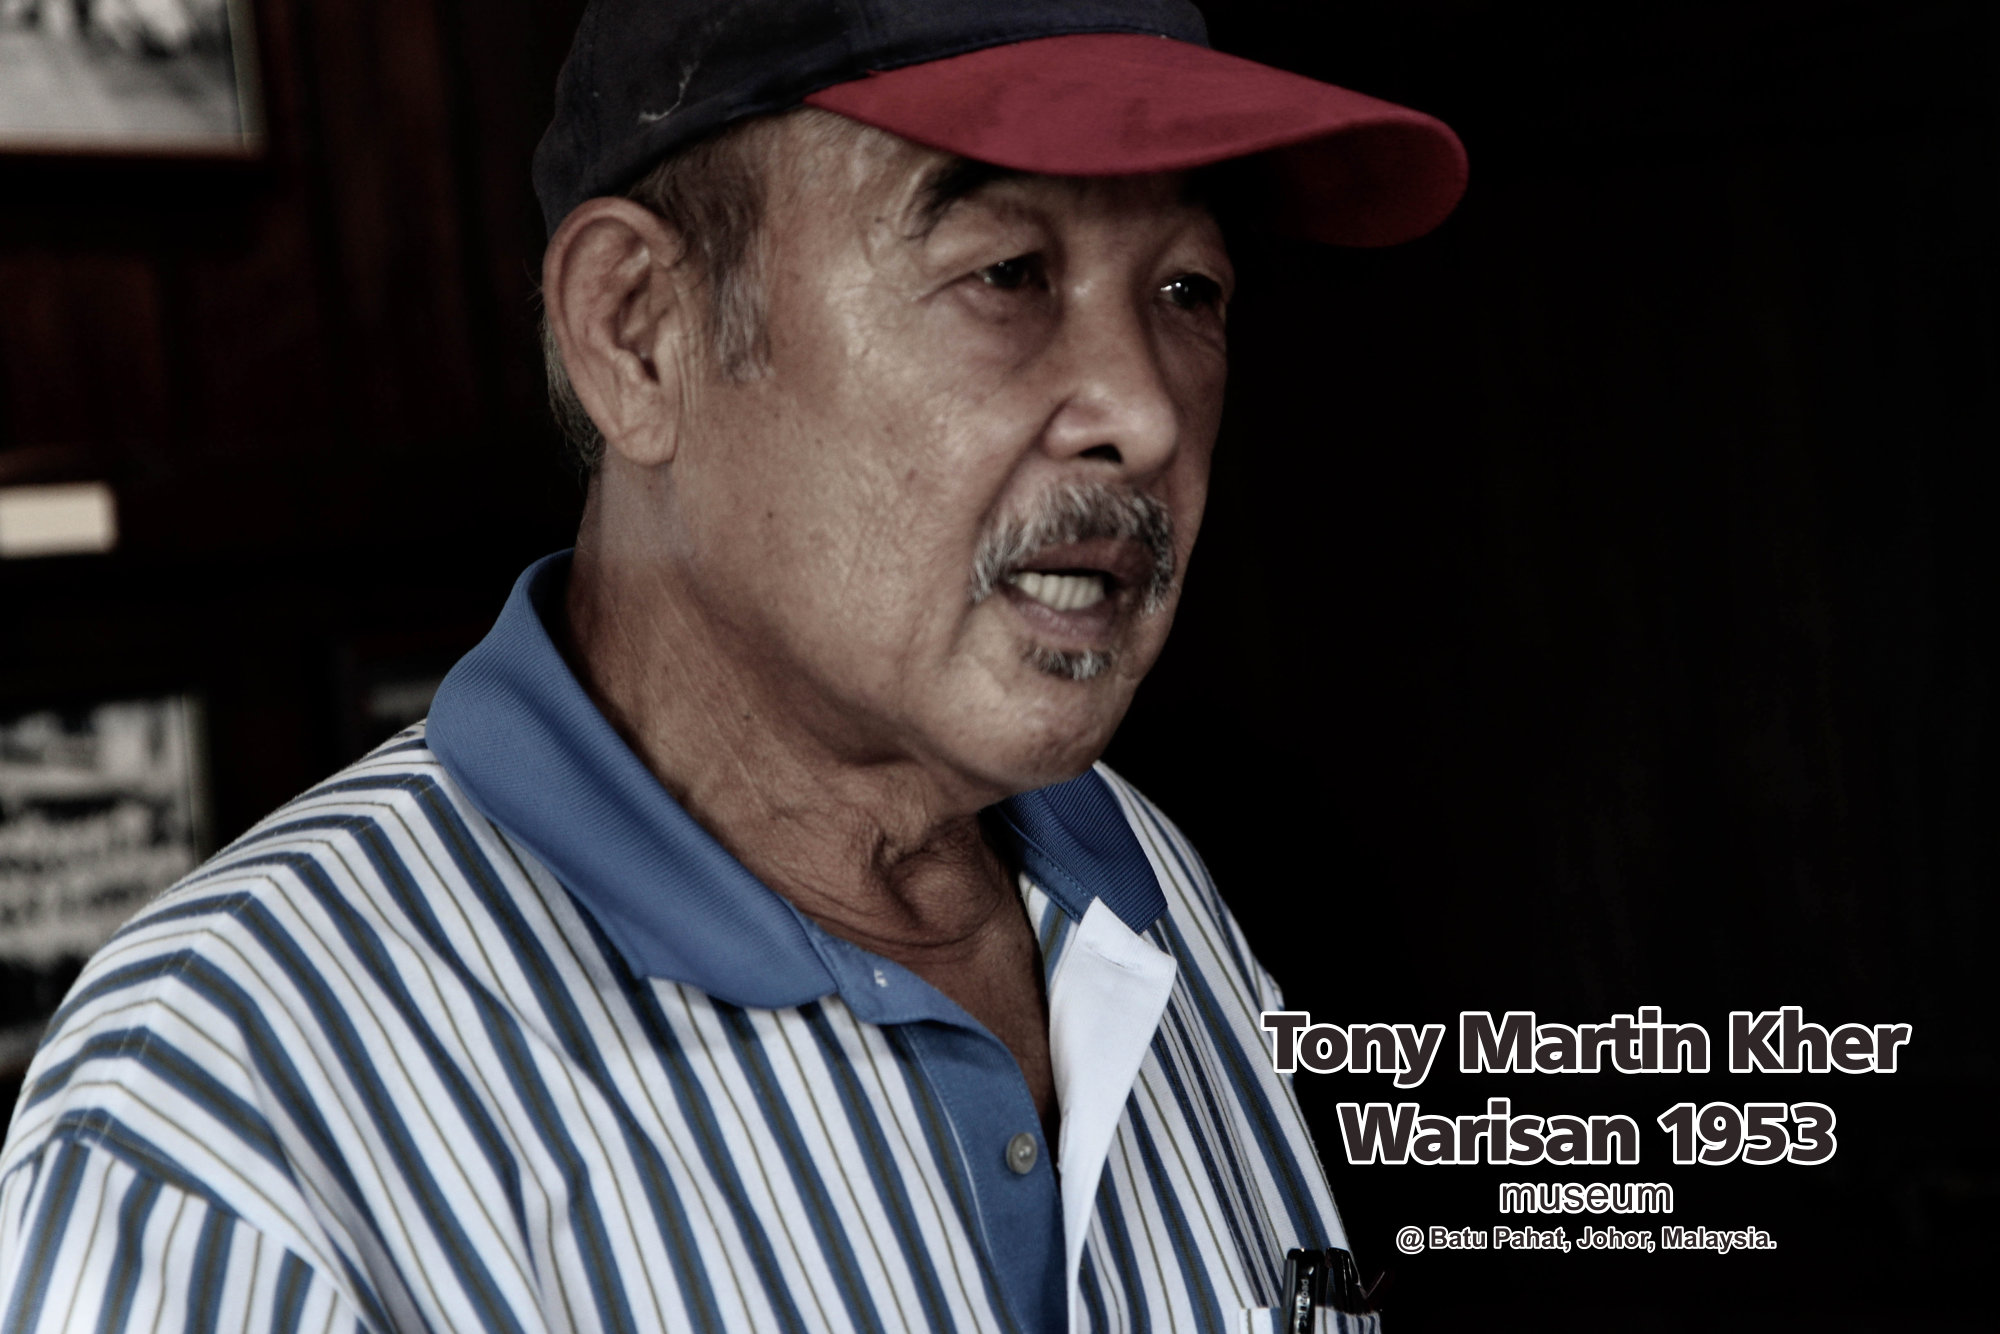 Tony Martin Kher founder of Warisan 1953 Museum at Batu Pahat Johor Malaysia Heritage 1953 Artist Joey Kher A37